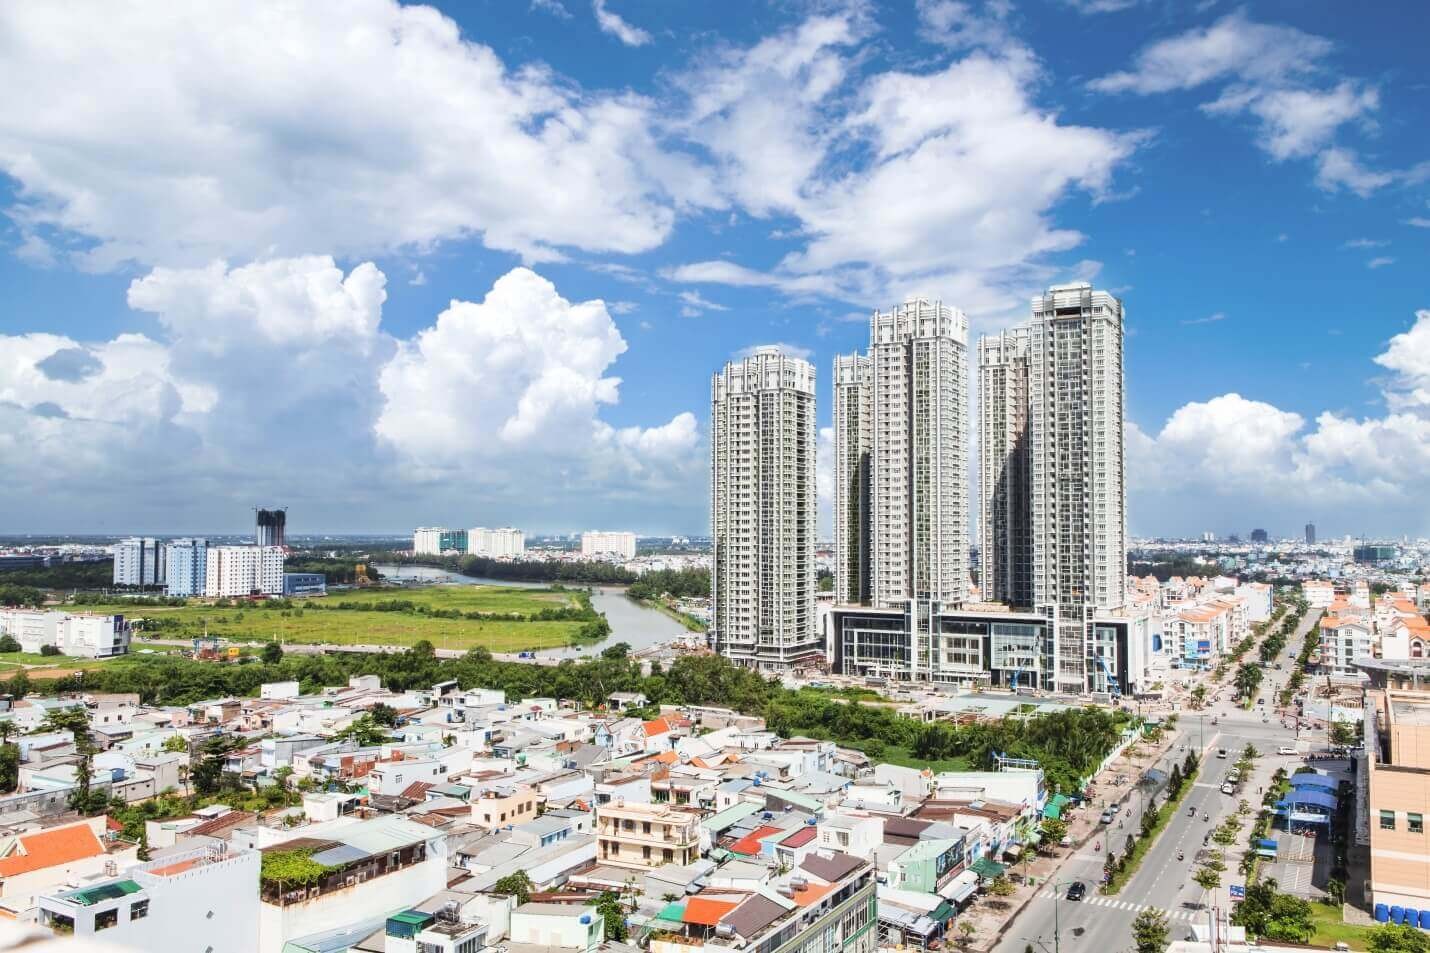 
Quyết định siết cao ốc sẽ tác động mạnh đến thị trường bất động sản TP. Hồ Chí Minh.
